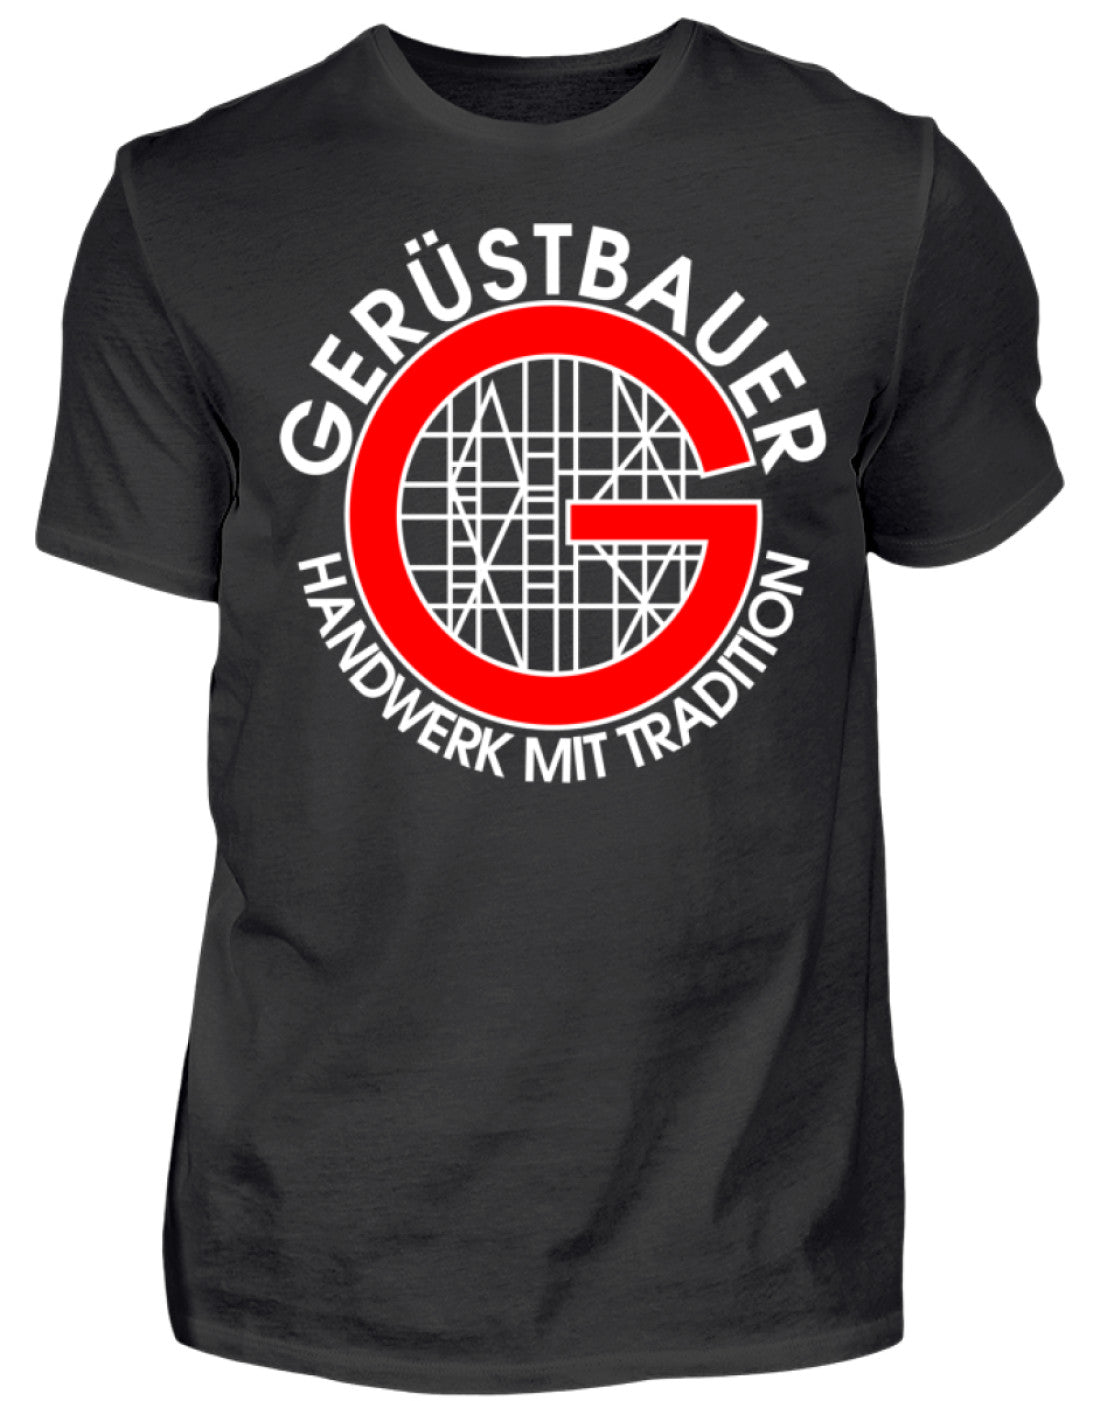 Gerüstbauer Shirt / Handwerk mit Tradition €21.95 Gerüstbauer - Shop >>